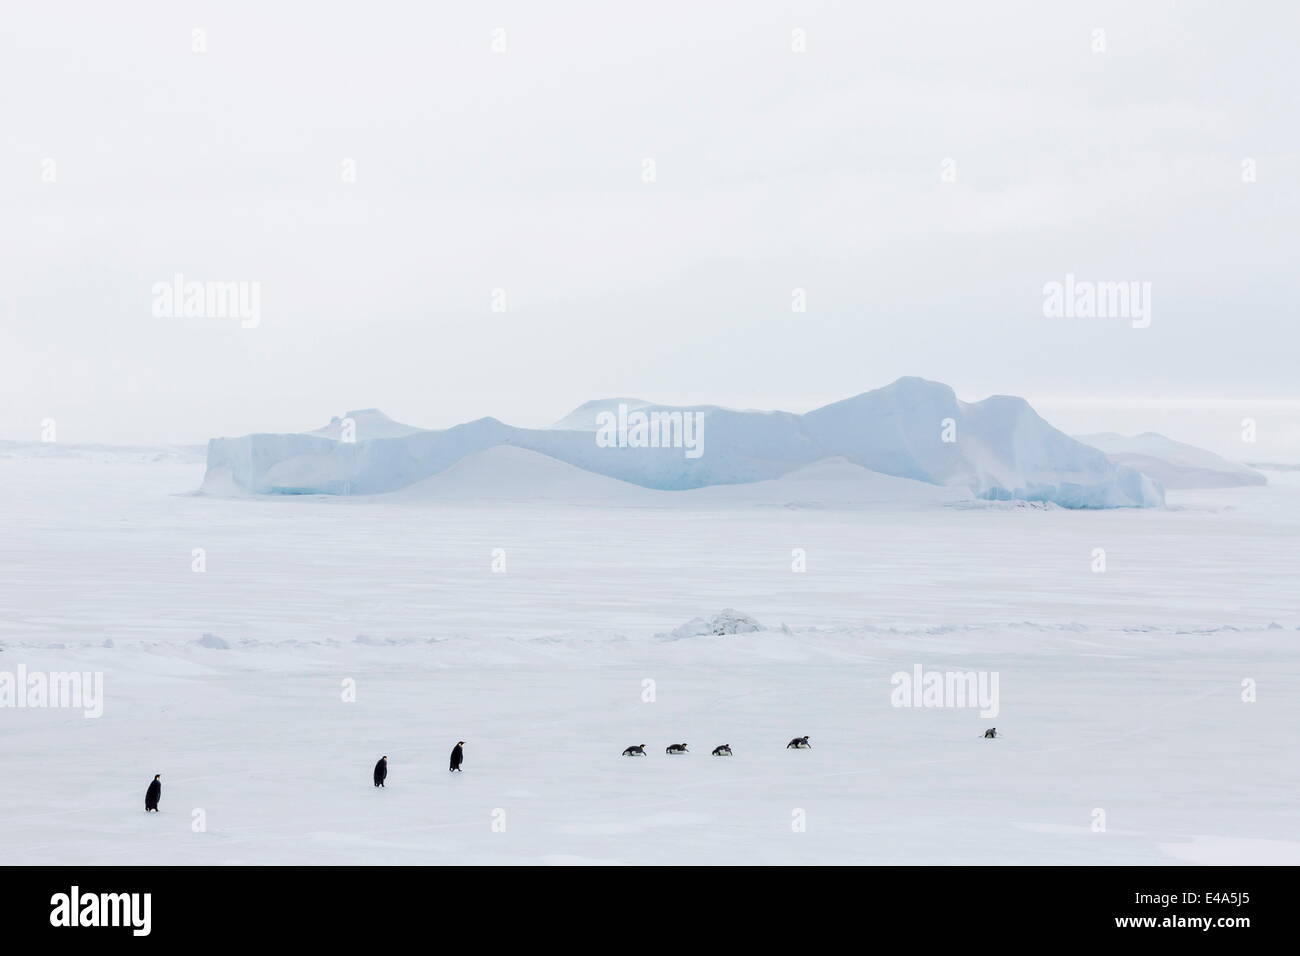 Manchots Empereurs (Aptenodytes forsteri) marchant à travers la glace de mer sur l'île de Snow Hill, mer de Weddell, l'Antarctique, régions polaires Banque D'Images